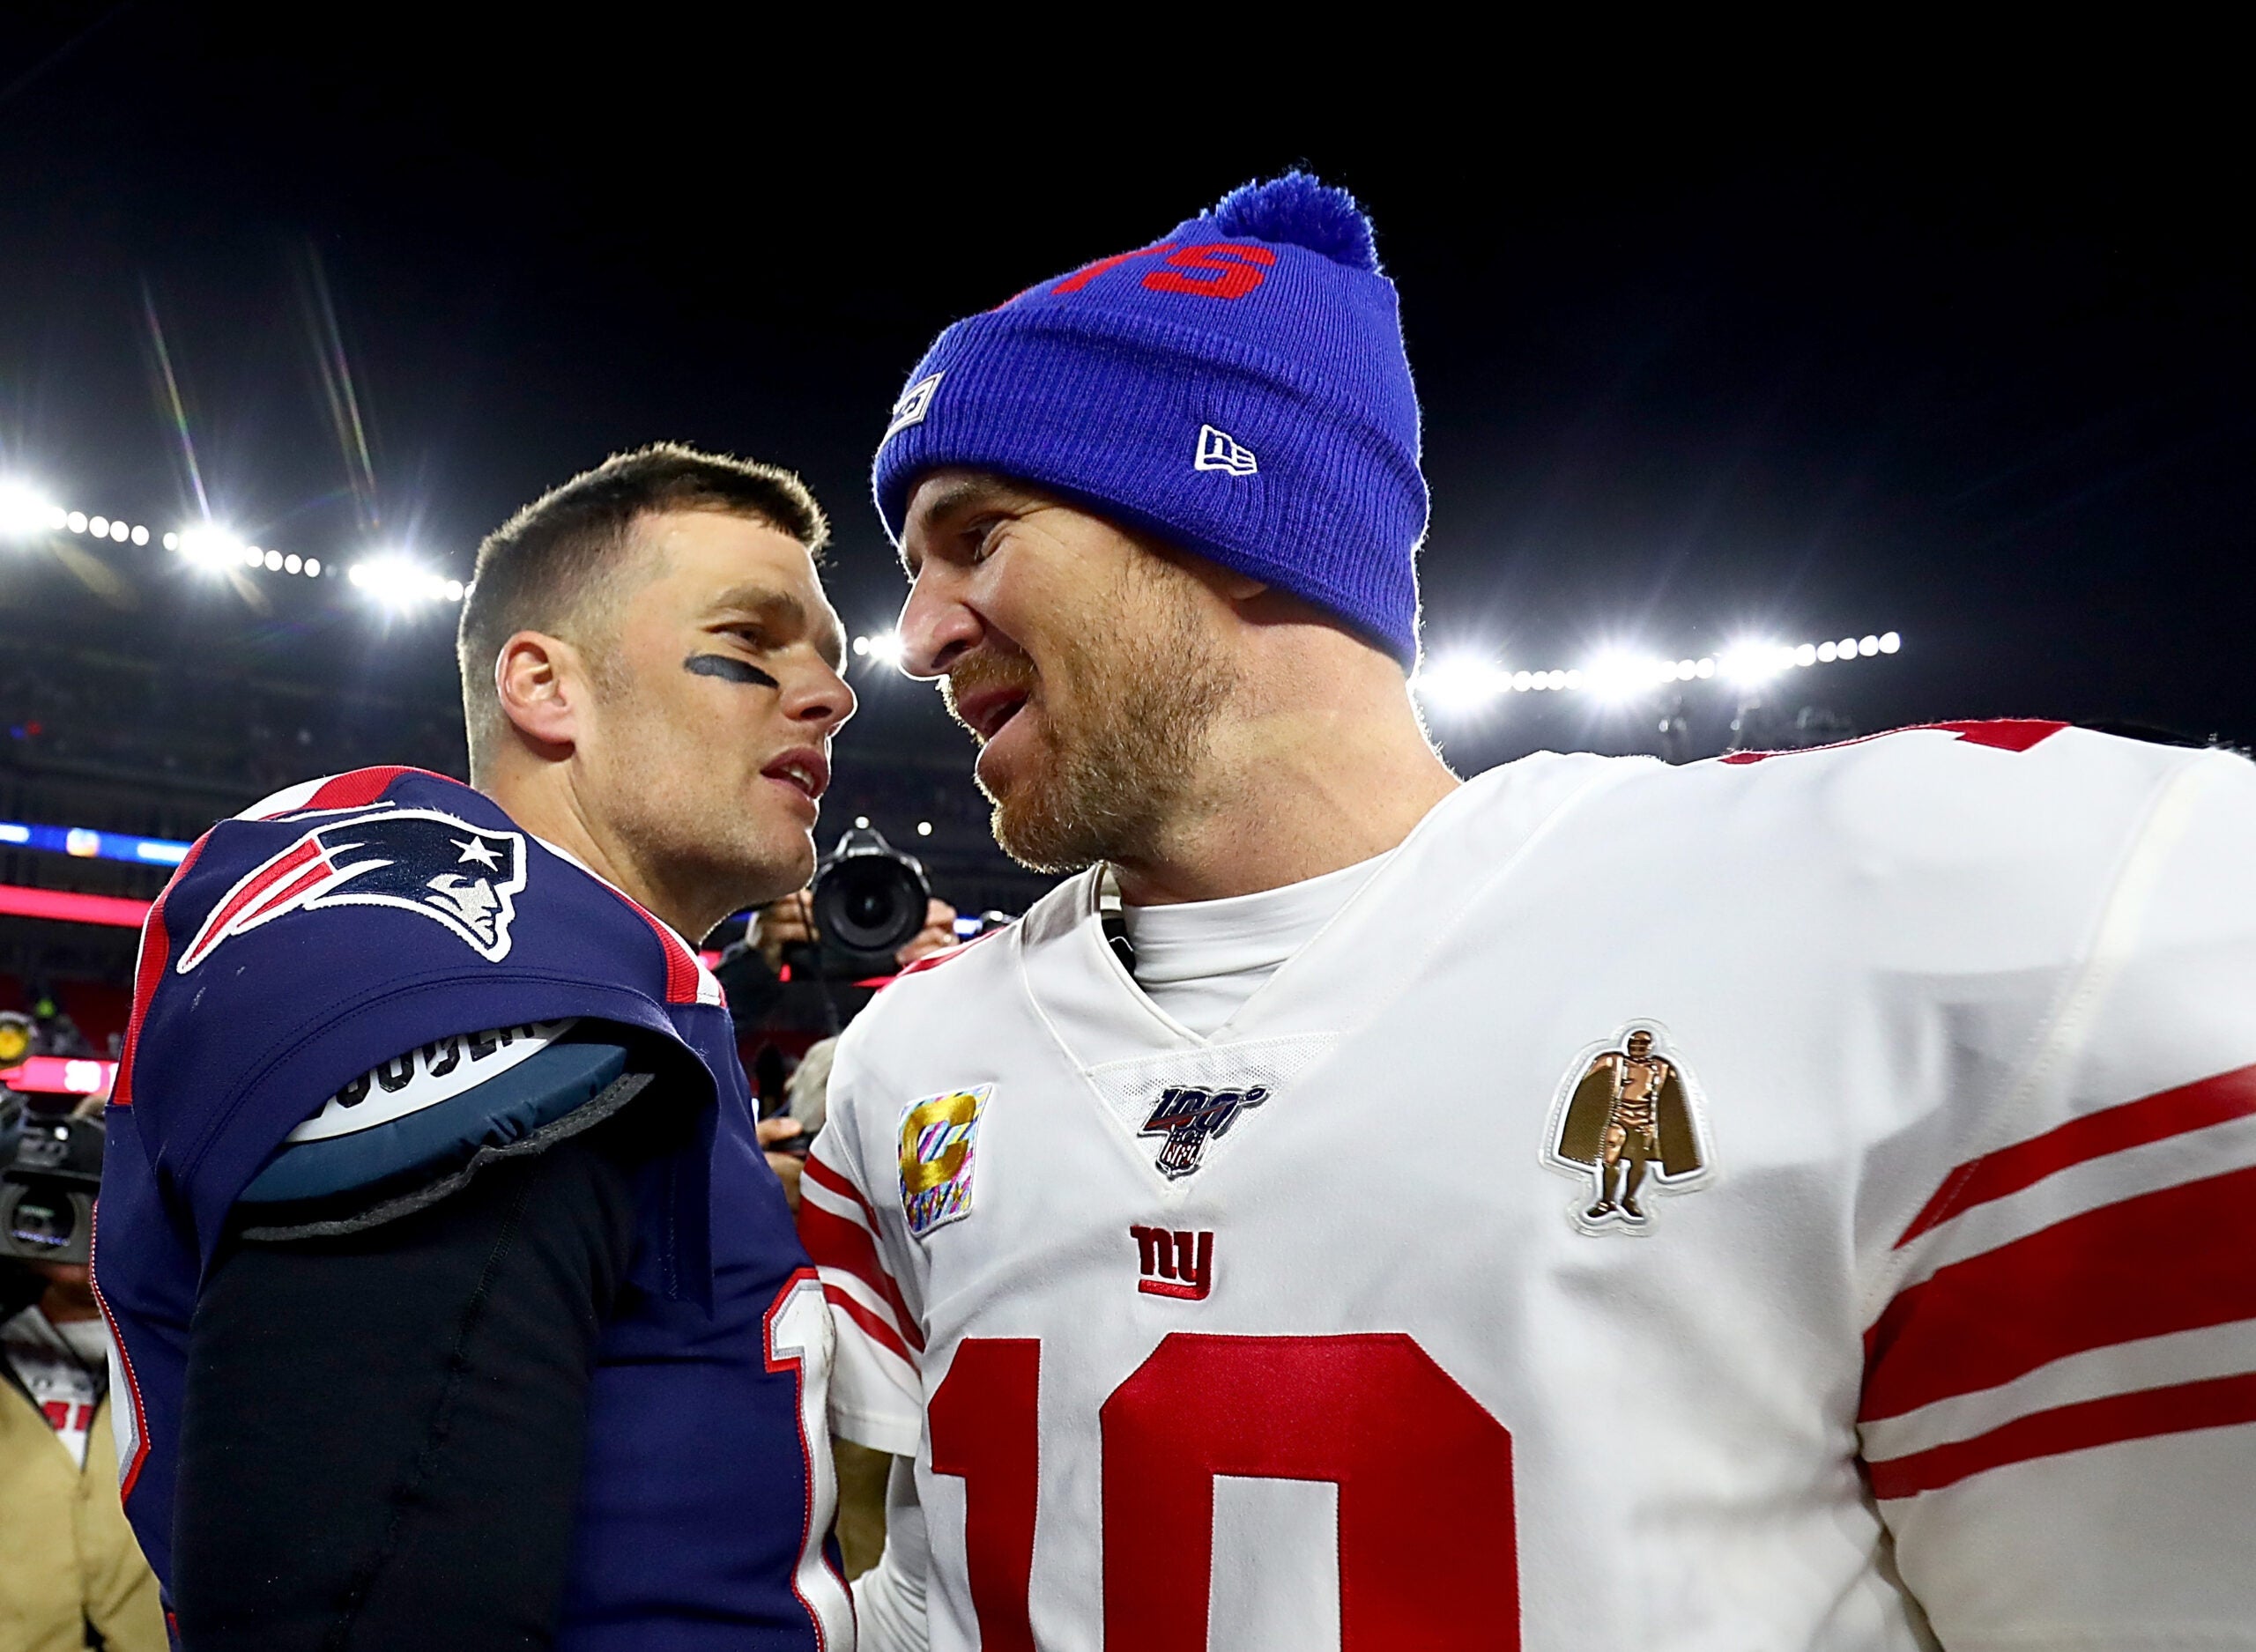 Peyton Manning's favorite Super Bowl memory is watching Eli beat